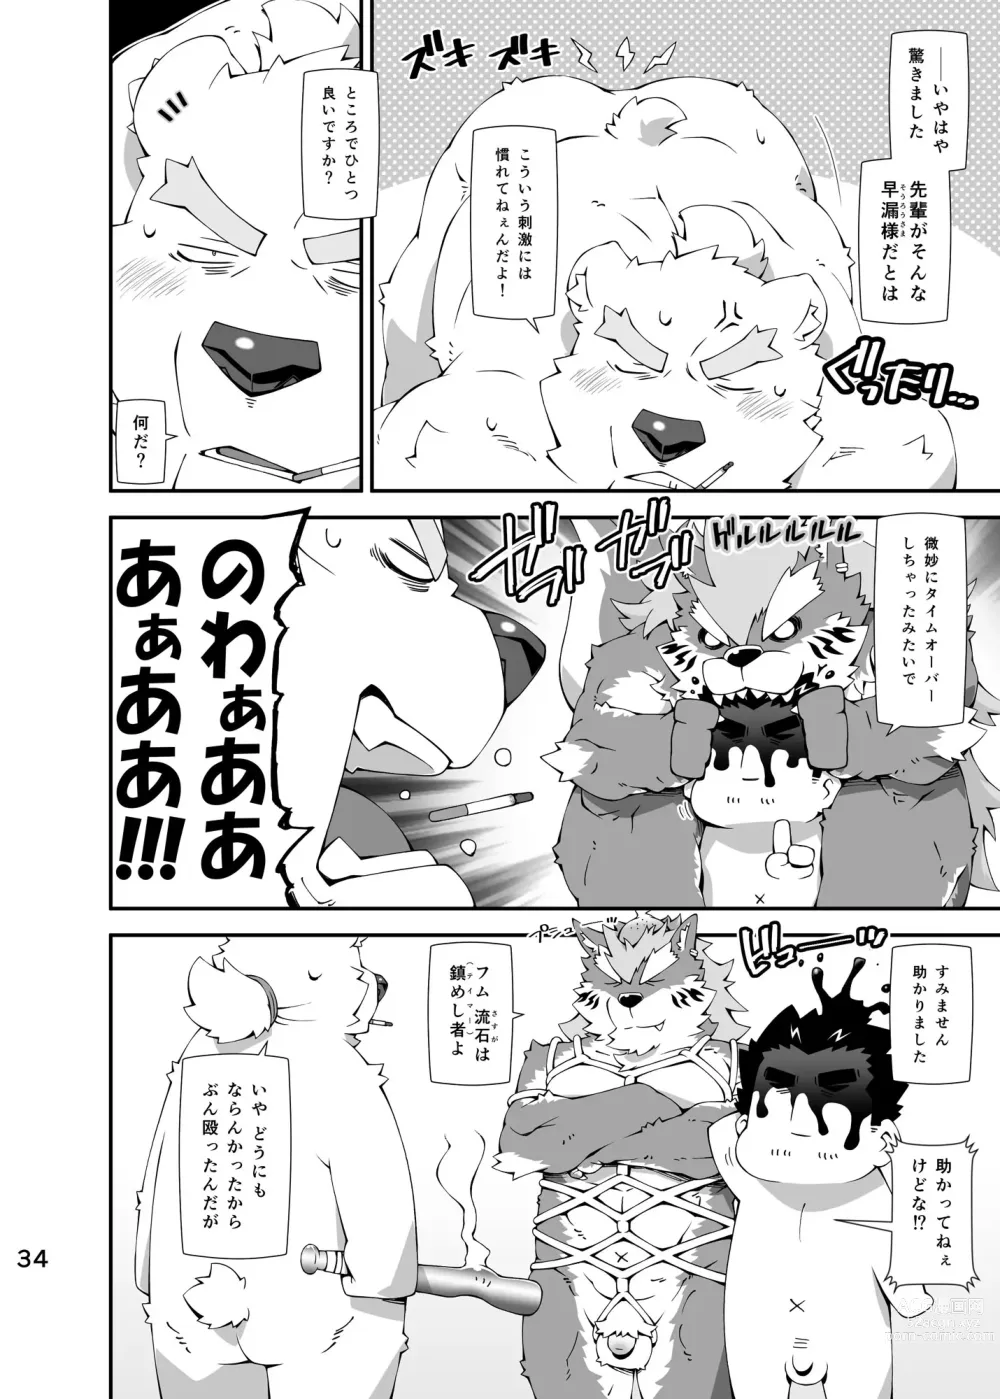 Page 33 of doujinshi Shirokuma to Fe